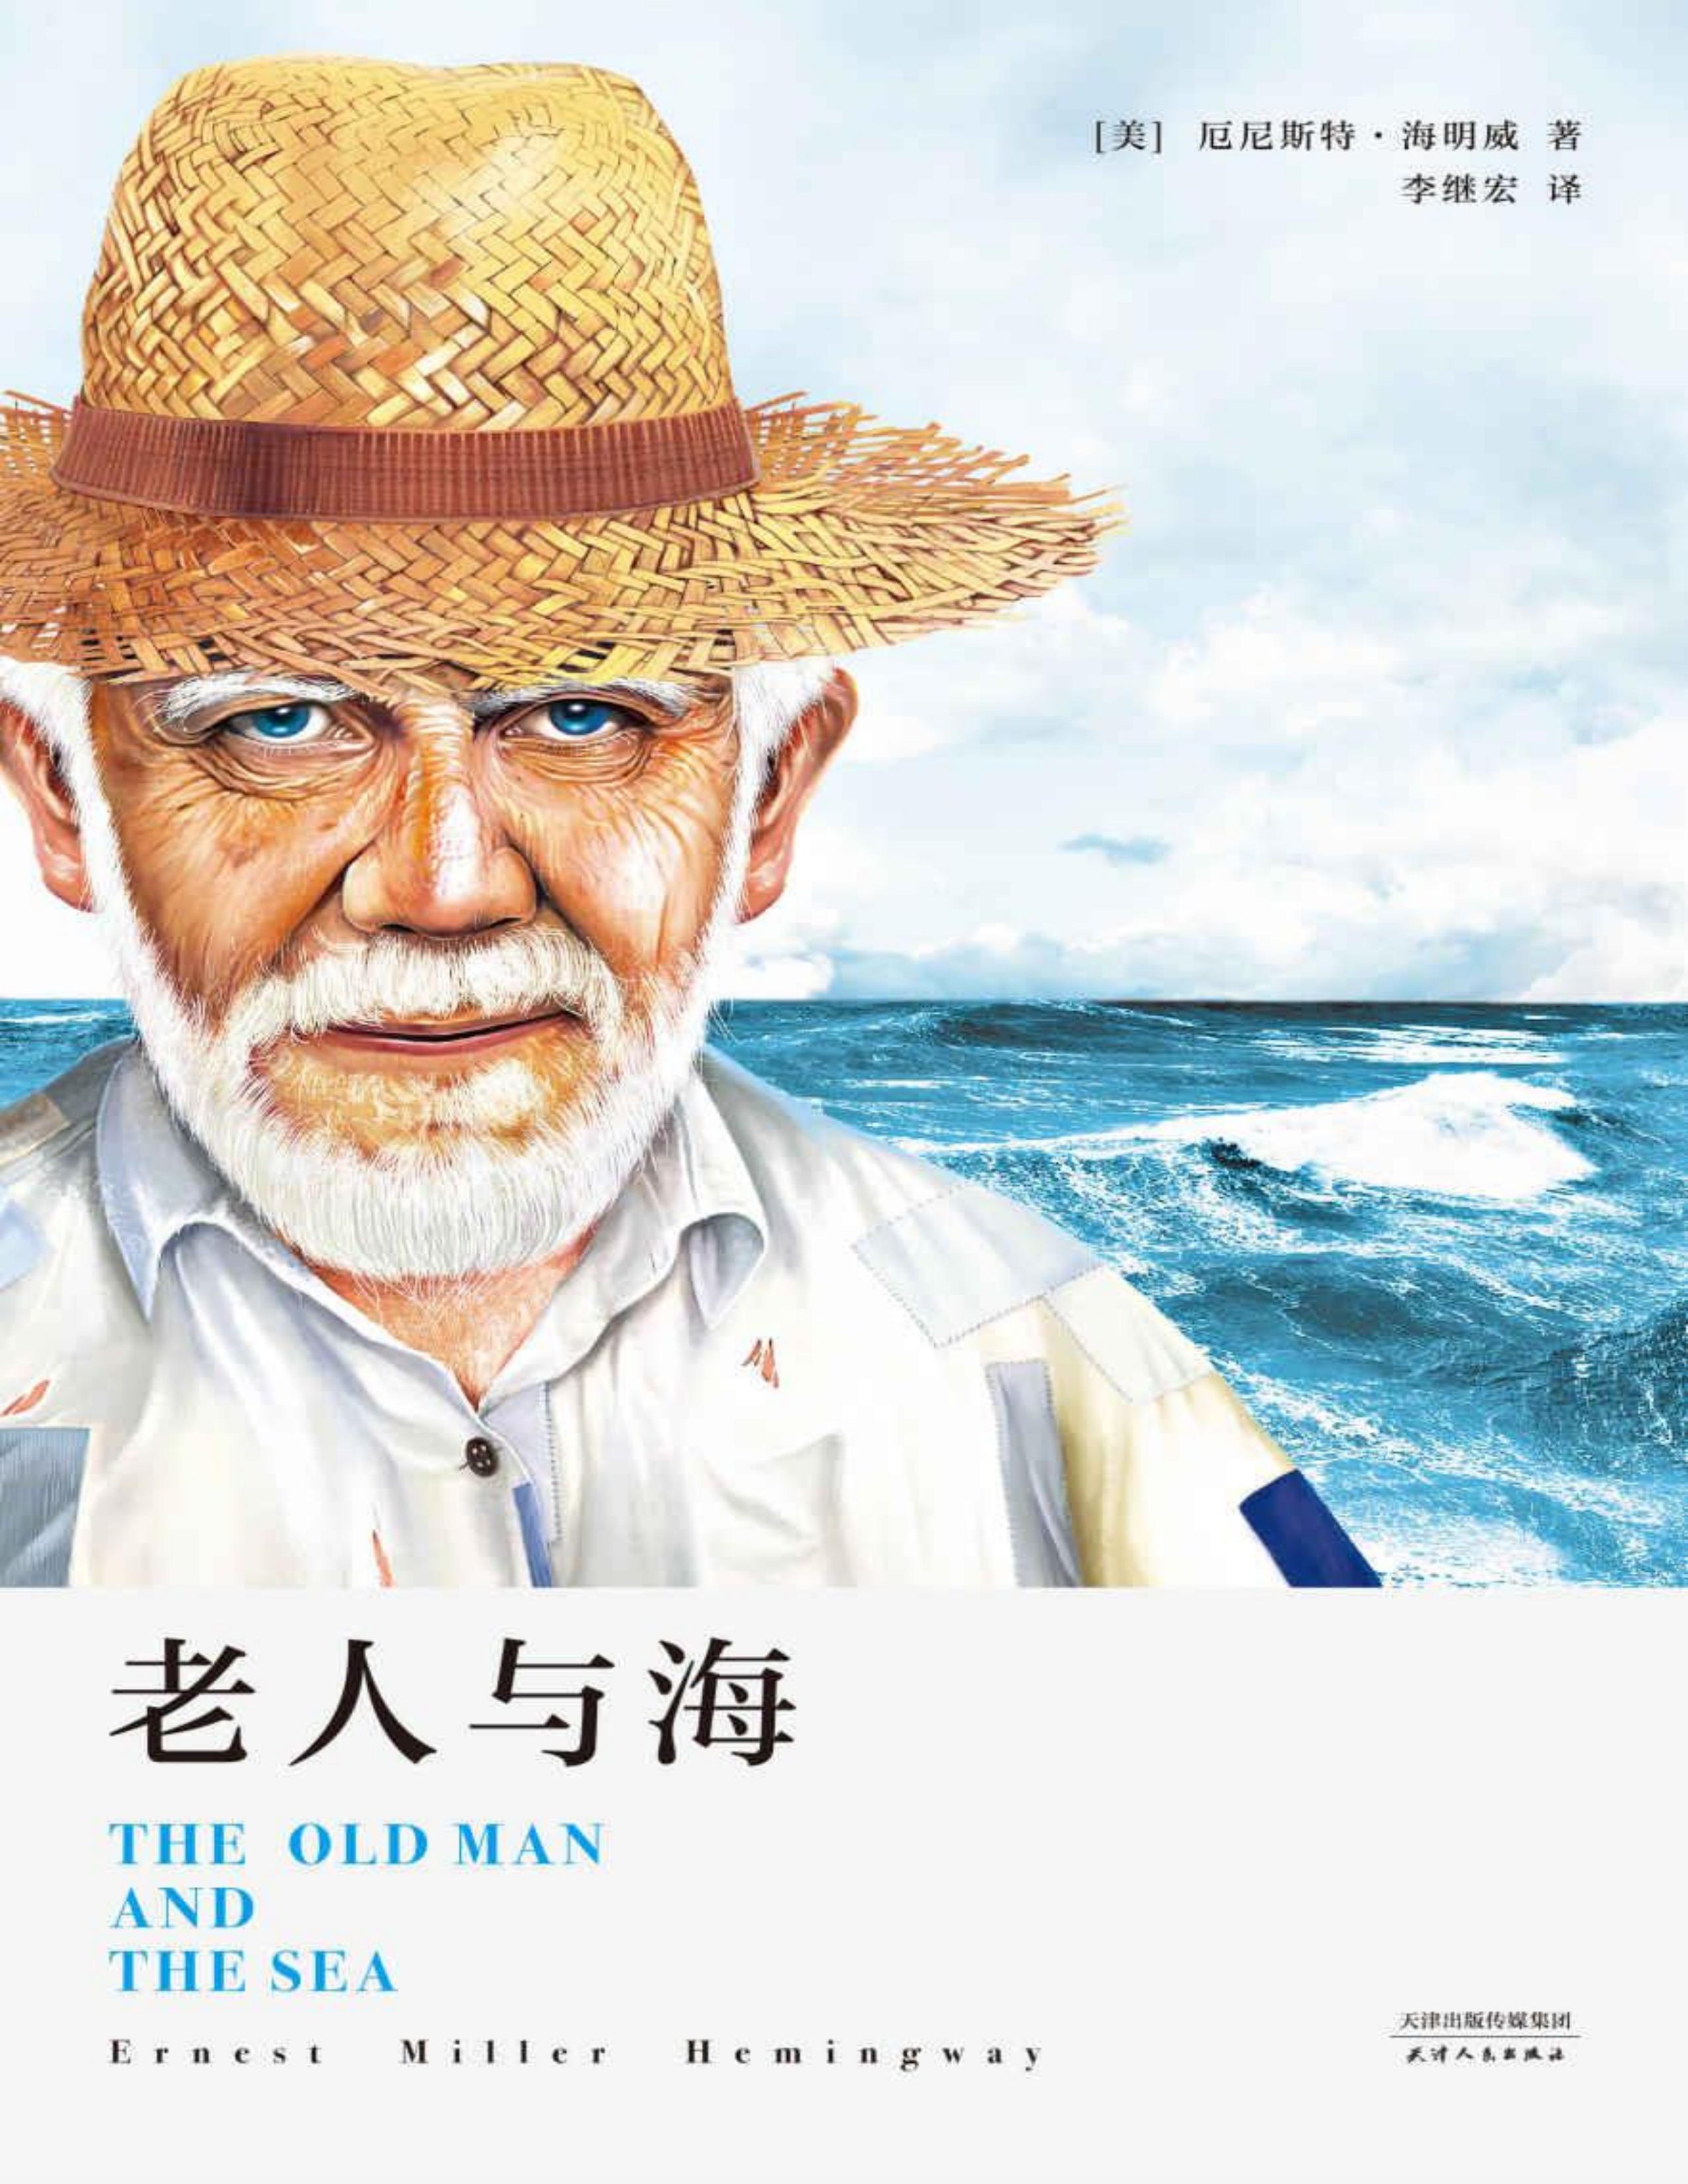 老人与海简单的插图图片